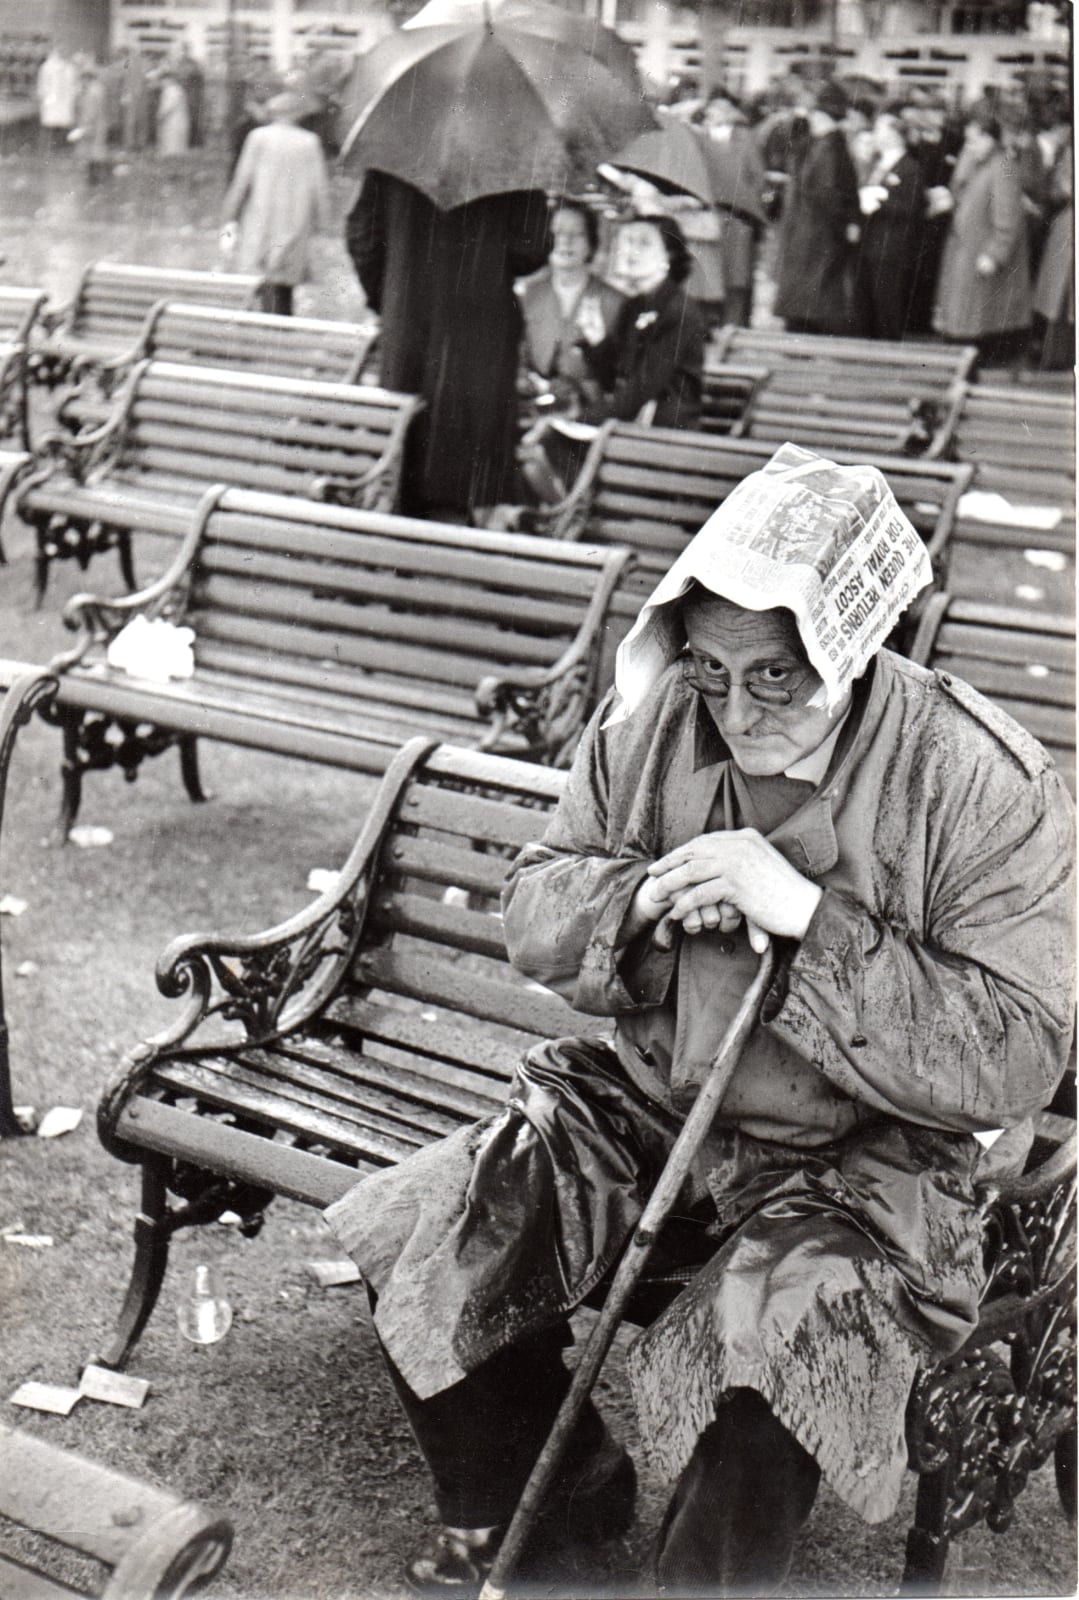 Henri Cartier-Bresson, Ascot, England, 1955